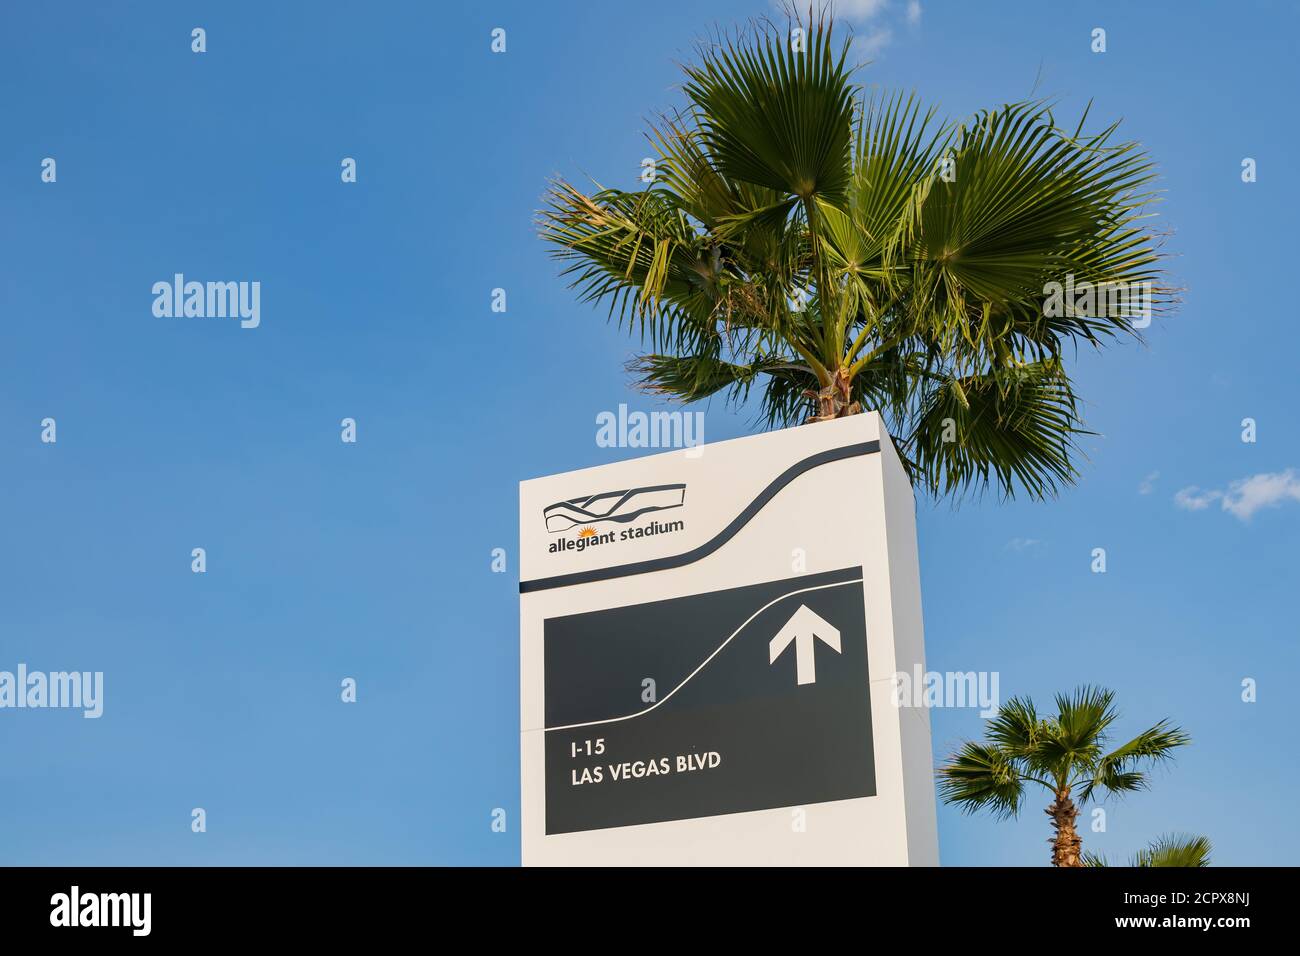 Las Vegas, 15 SETTEMBRE 2020 - Sunny vista esterna del segno di Allegiant Stadium Foto Stock